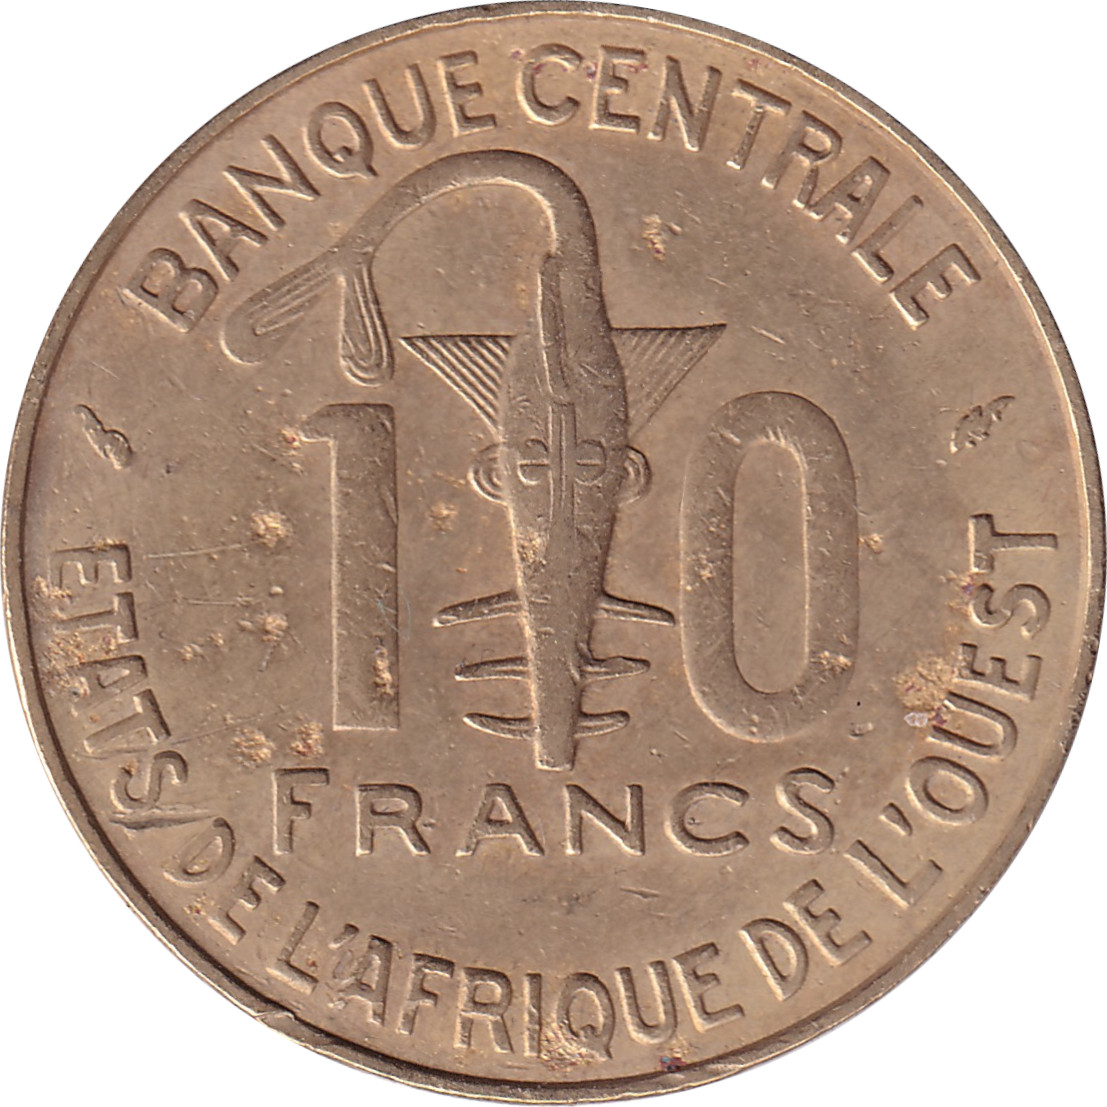 10 francs - Facing antelope